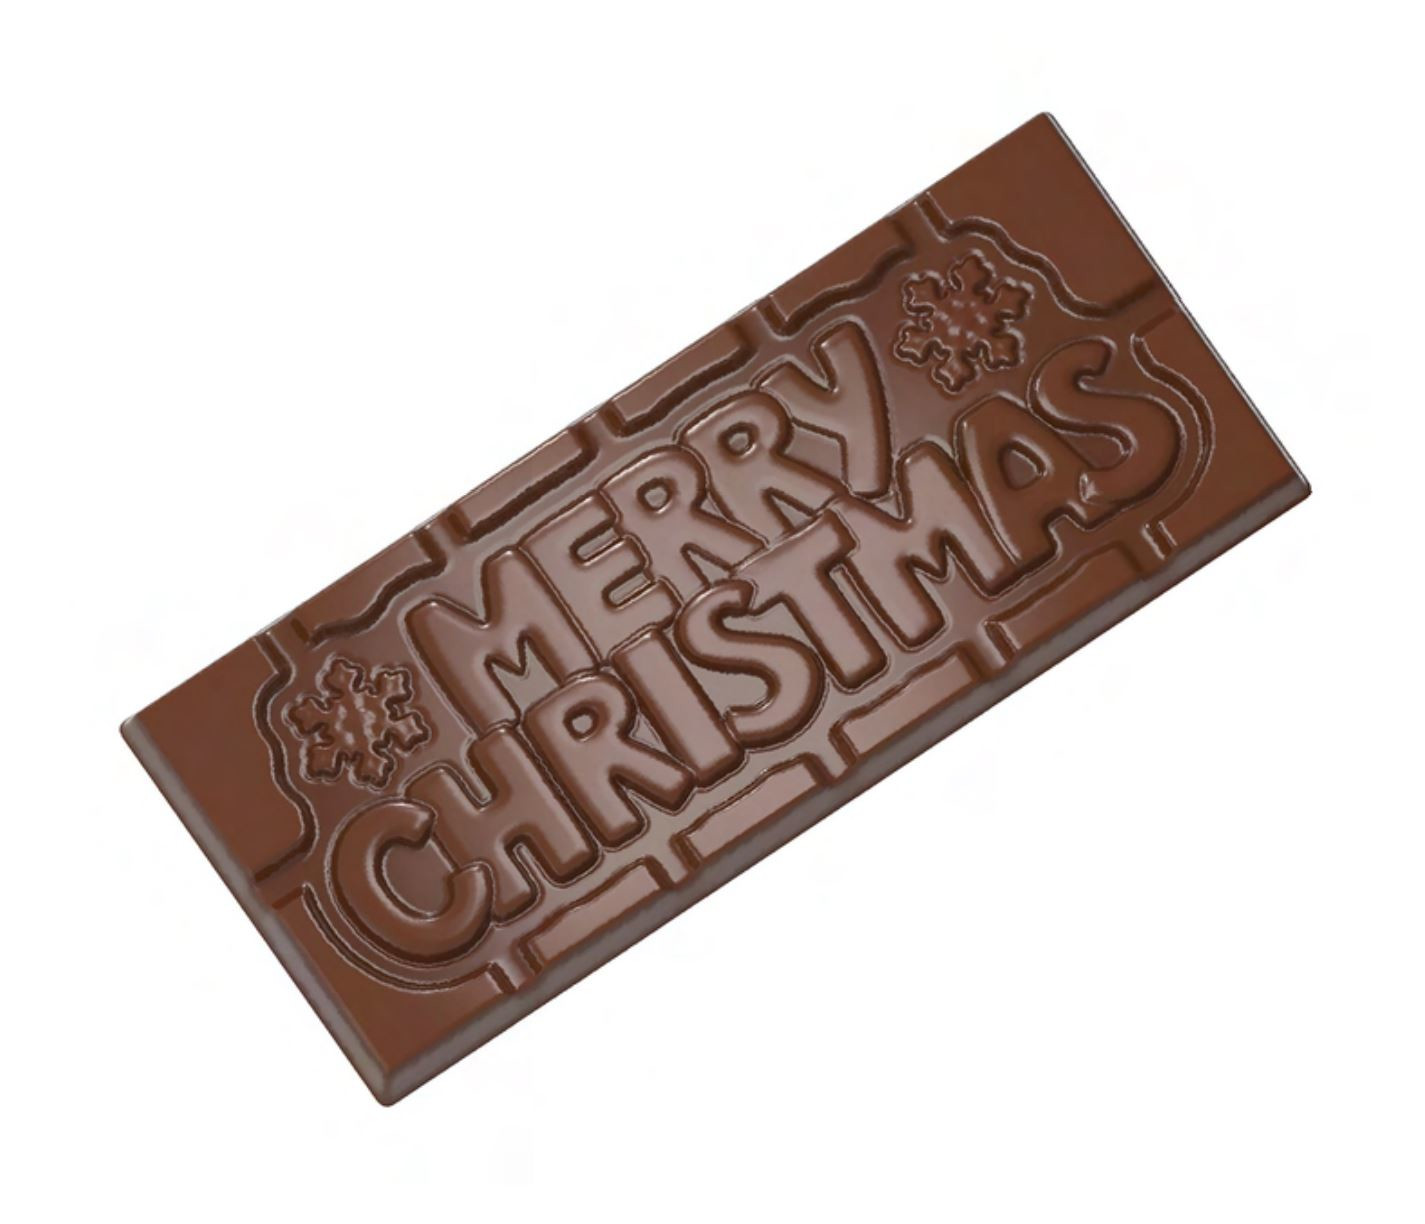 Pralinhuset - Chocolate Wish - 70% Kakao - Merry Christmas